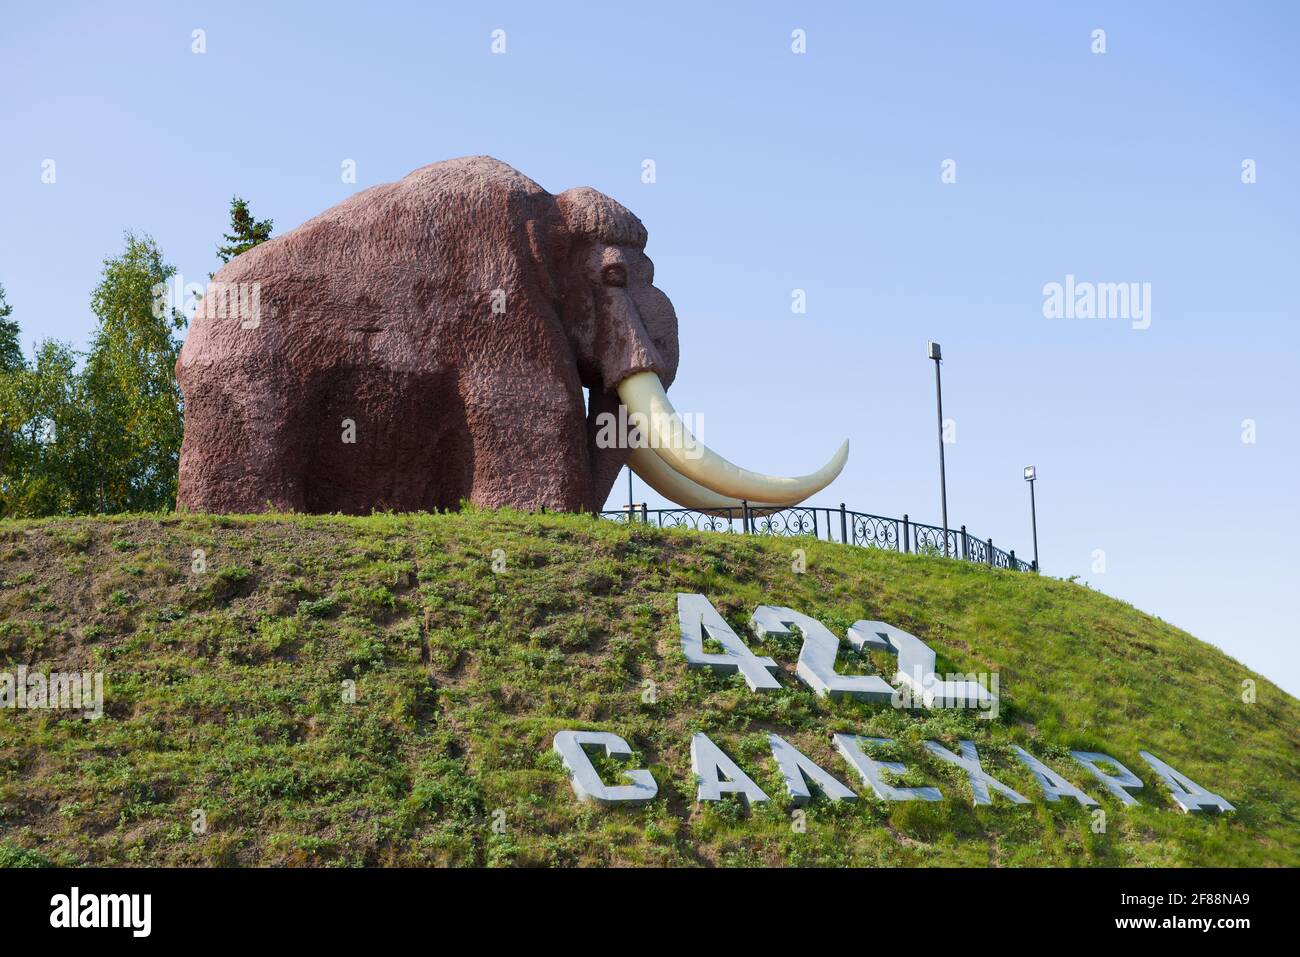 SALEKHARD, RUSSLAND - 29. AUGUST 2018: Skulptur eines Mammuts an einem sonnigen Tag. Das Symbol der Stadt Salekhard Stockfoto